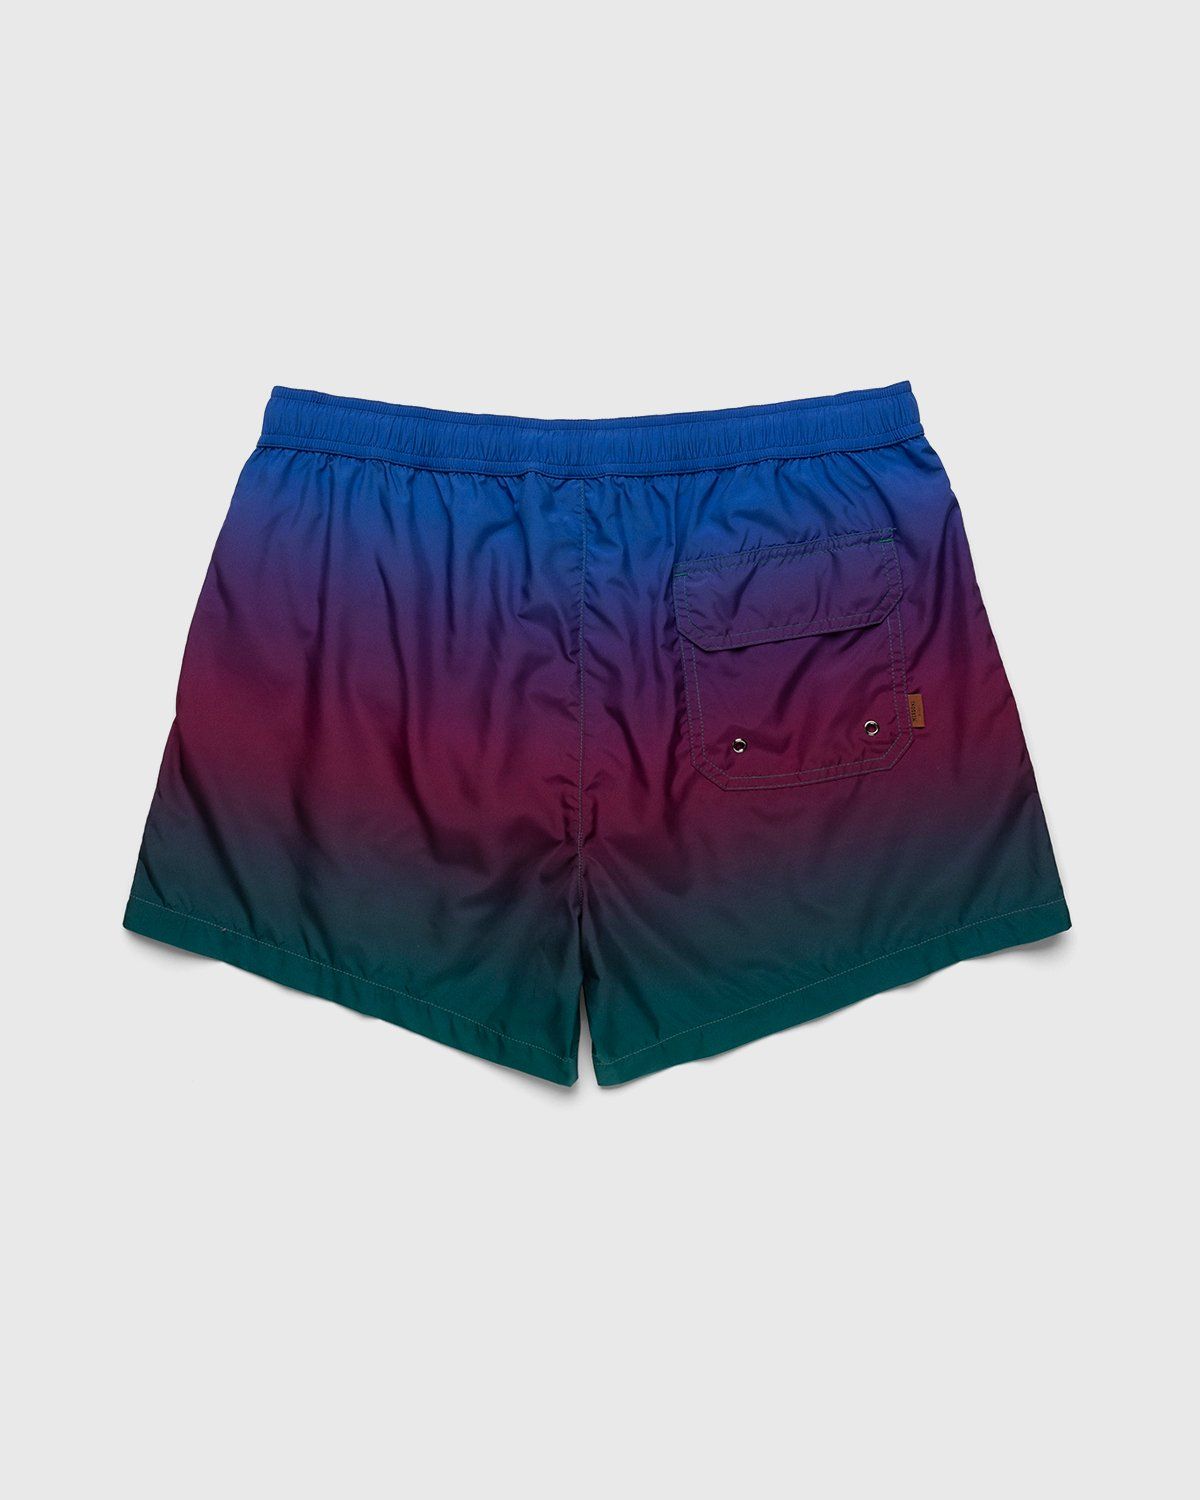 Missoni – Degrade Print Swim Shorts Blue - Shorts - Blue - Image 2